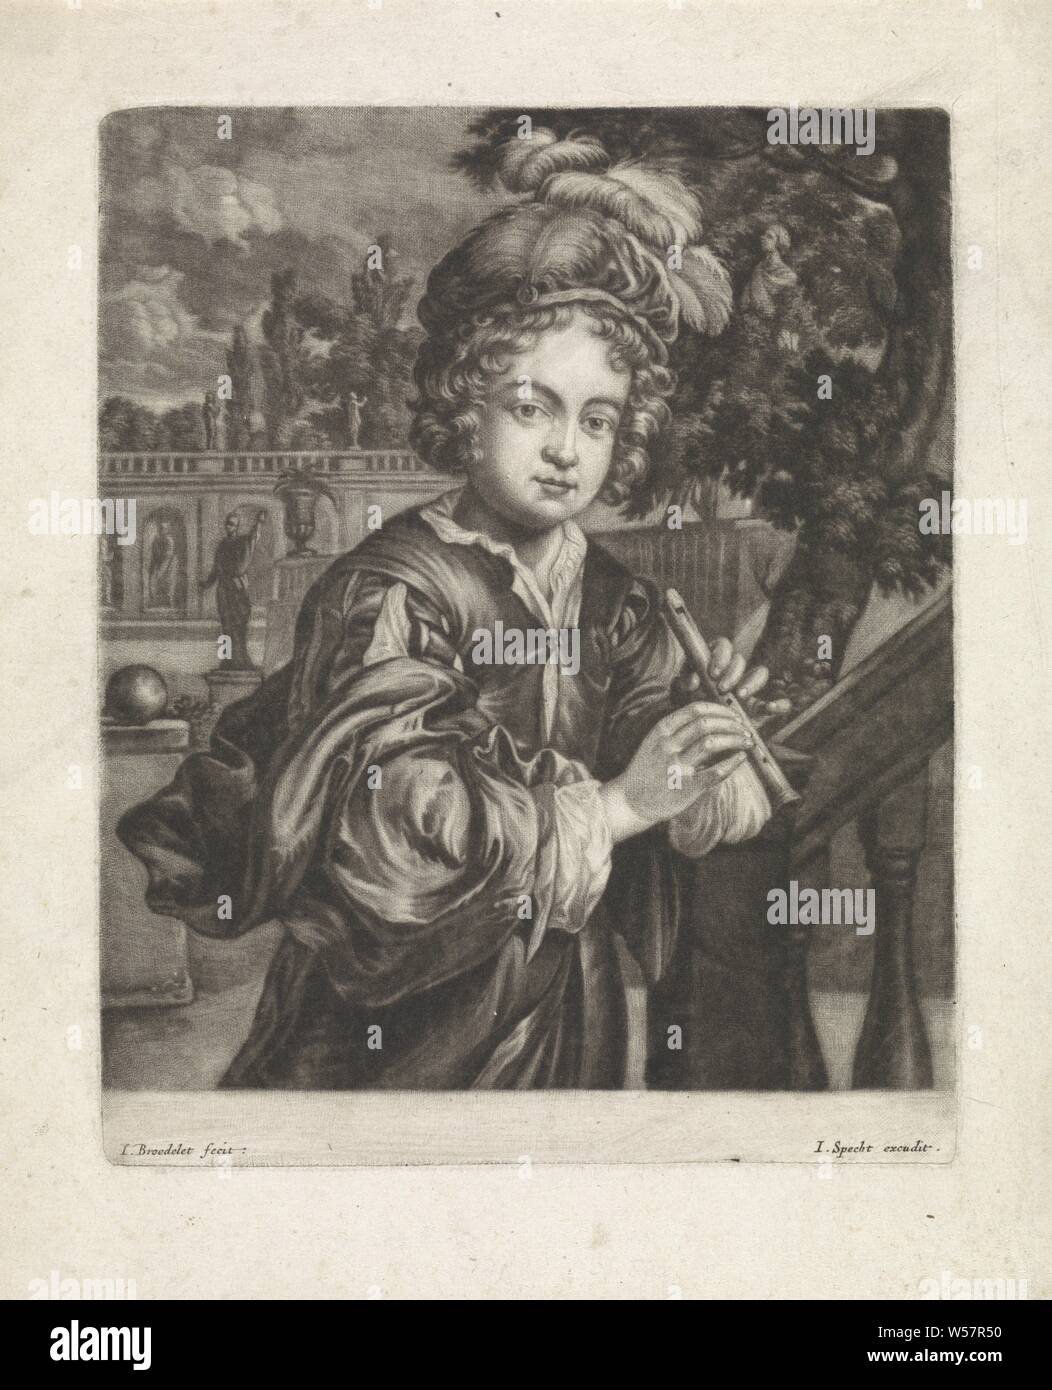 Joueur de flûte, un garçon avec une flûte se trouve dans un jardin avec des images classiques. Il porte un béret de plumes, de flûte, d'aulos, tibia, chef-d'engrenage : hat (vêtements pour hommes), Jan Broedelet (mentionné sur l'objet), Utrecht, 1690 - 1700, papier, gravure, h 180 mm × W 145 mm Banque D'Images